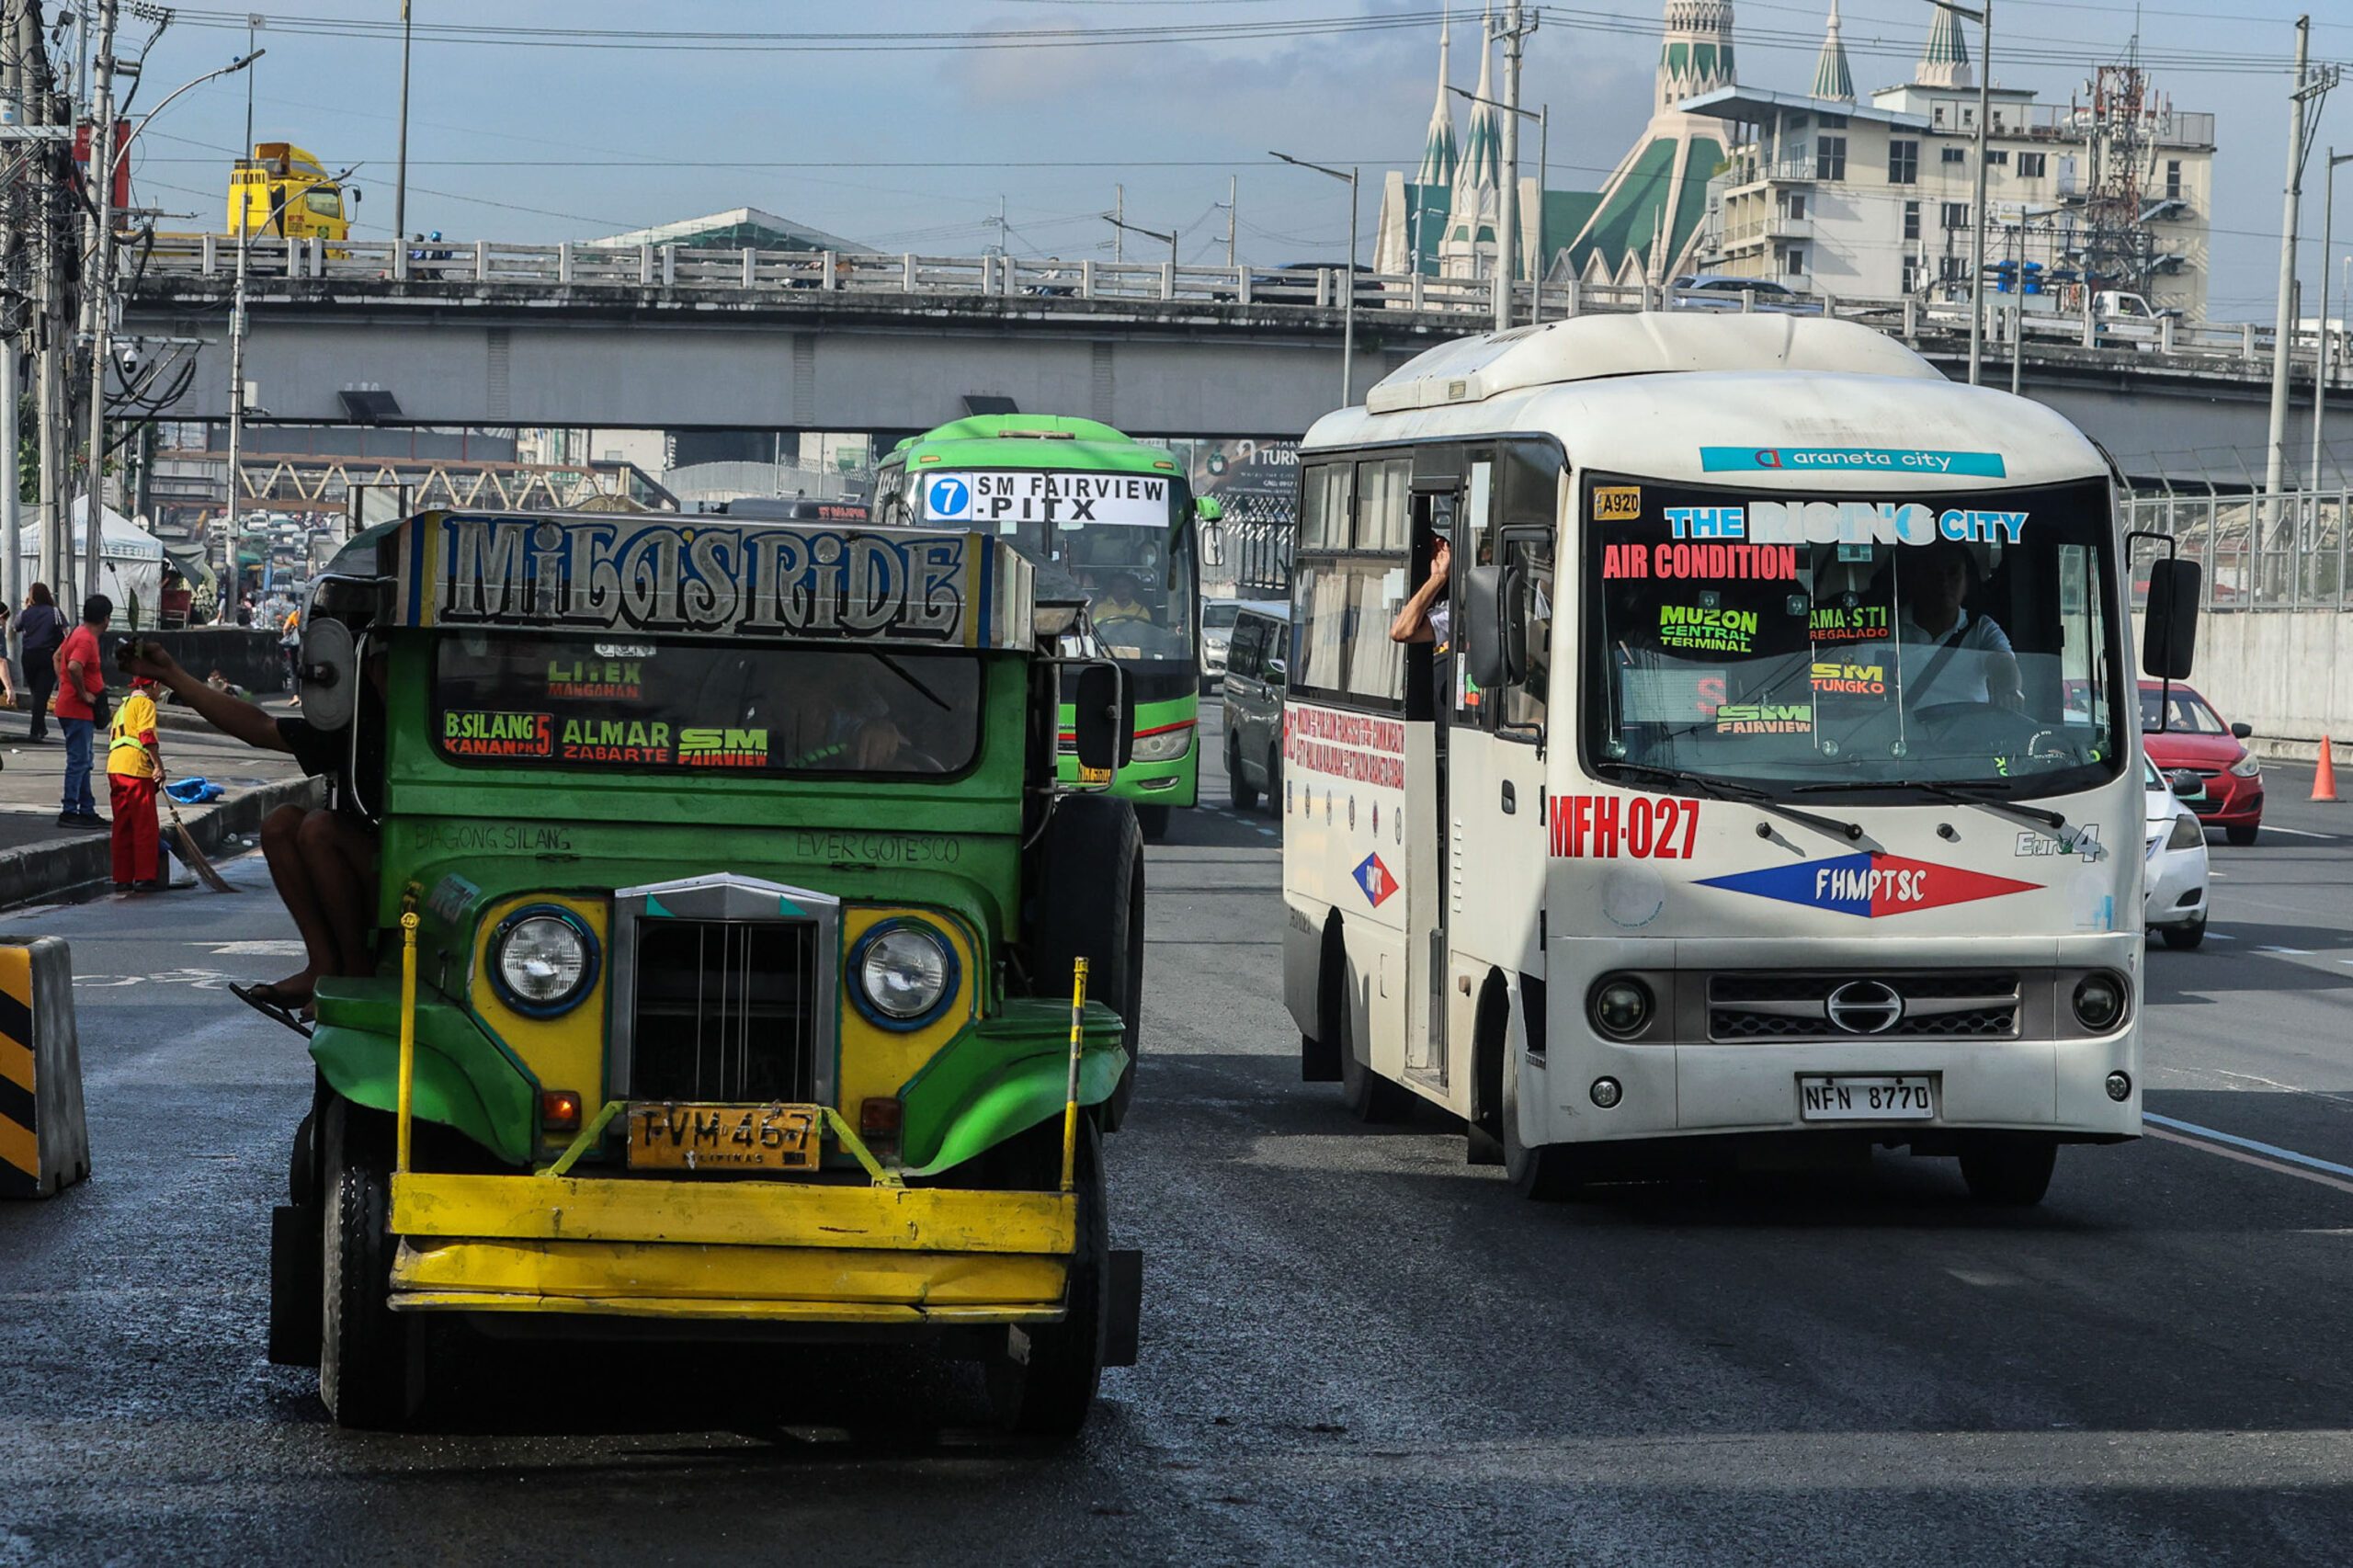 Can we fully electrify jeepney fleets under PUV modernization program?